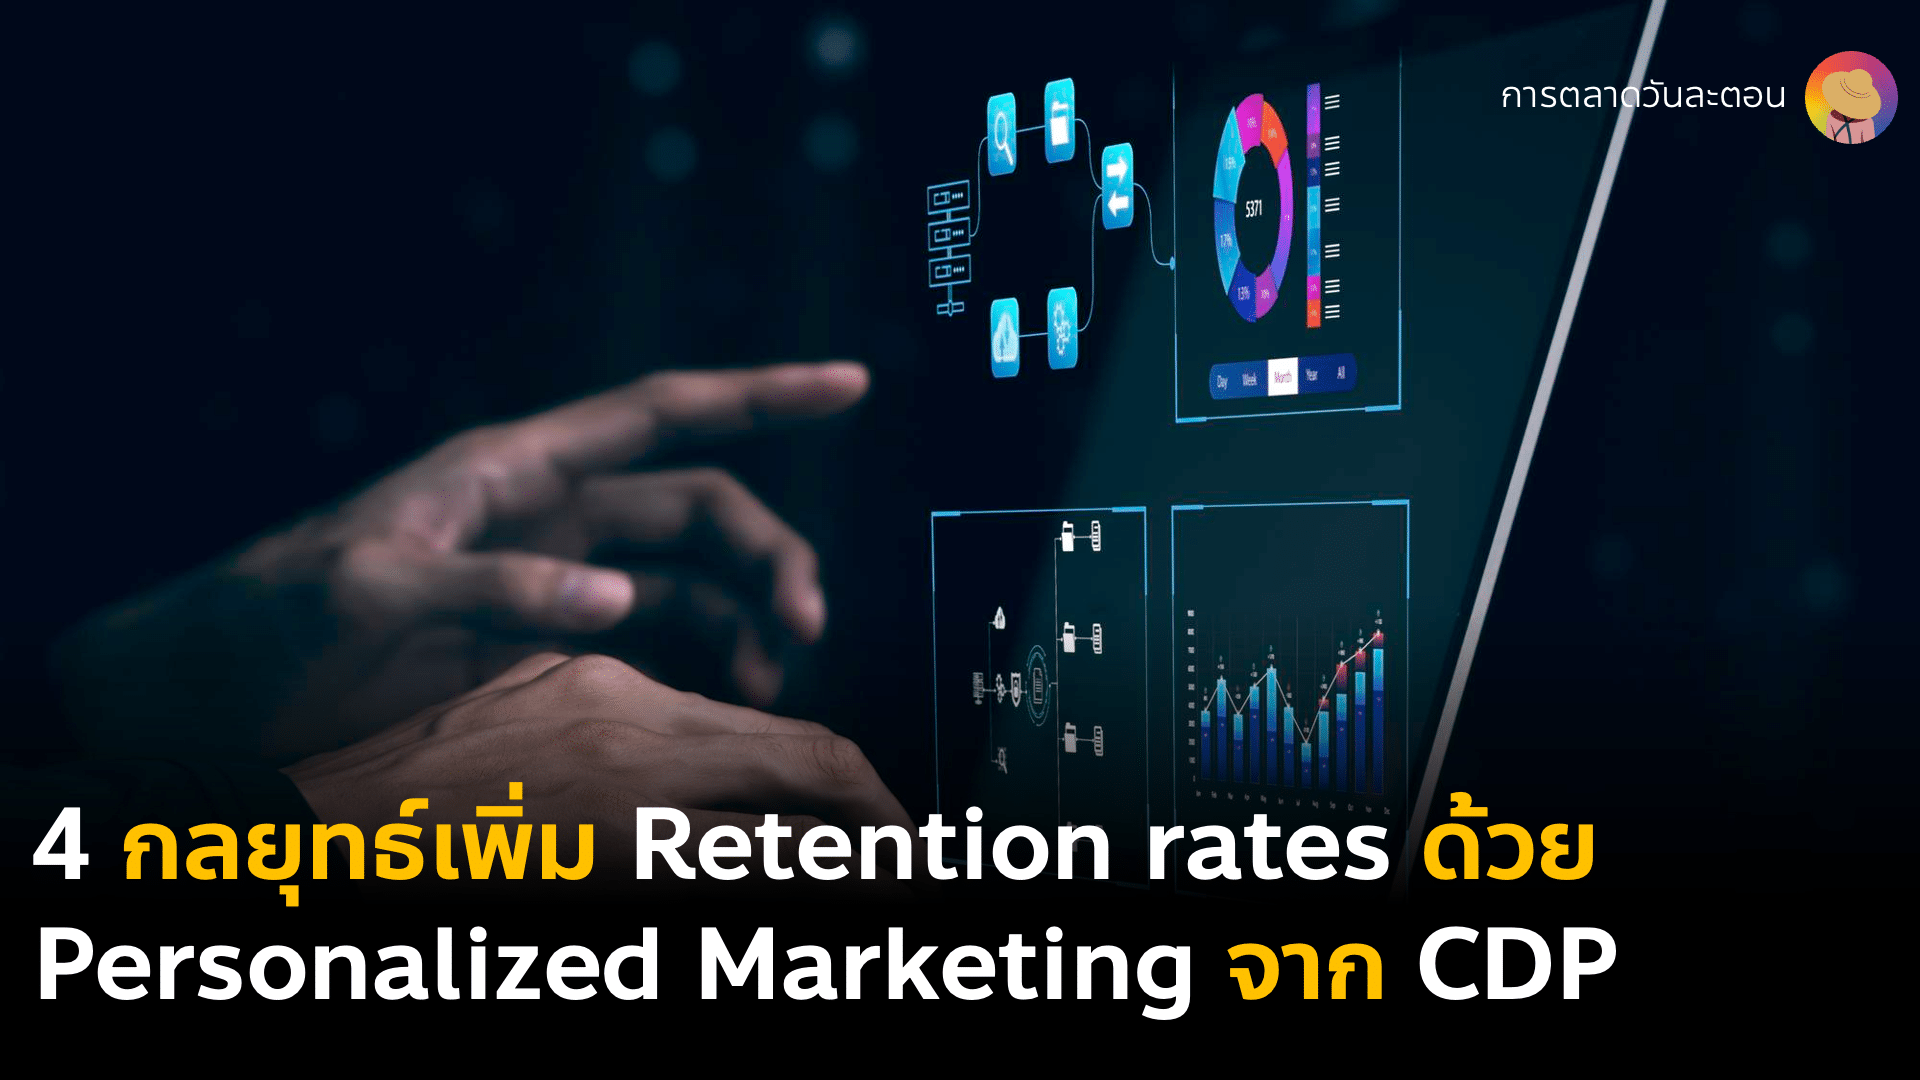 4 กลยุทธ์วิธีเพิ่ม Retention rates ให้ลูกค้ากลับมาซื้อซ้ำด้วยการตลาดแบบรู้ใจ Personalized Marketing กับ MarTech CDP Customer Data Platform